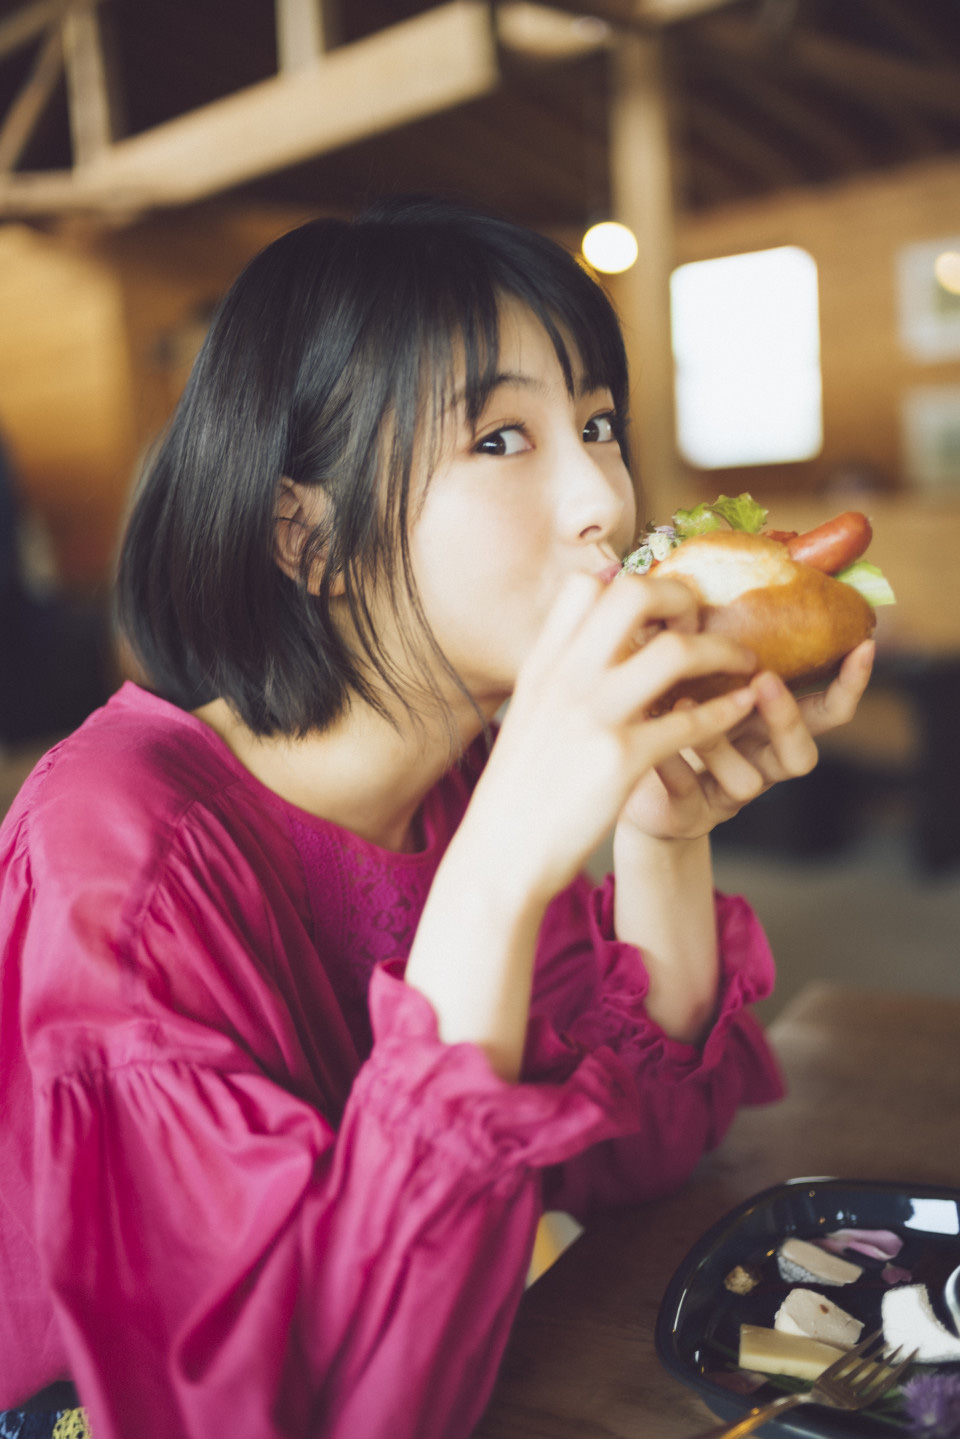 Ung thư vào từ miệng: Các chất tăng khả năng ung thư ẩn trong những món ăn, nhiều người sử dụng sai cách mà không hay biết - Ảnh 2.